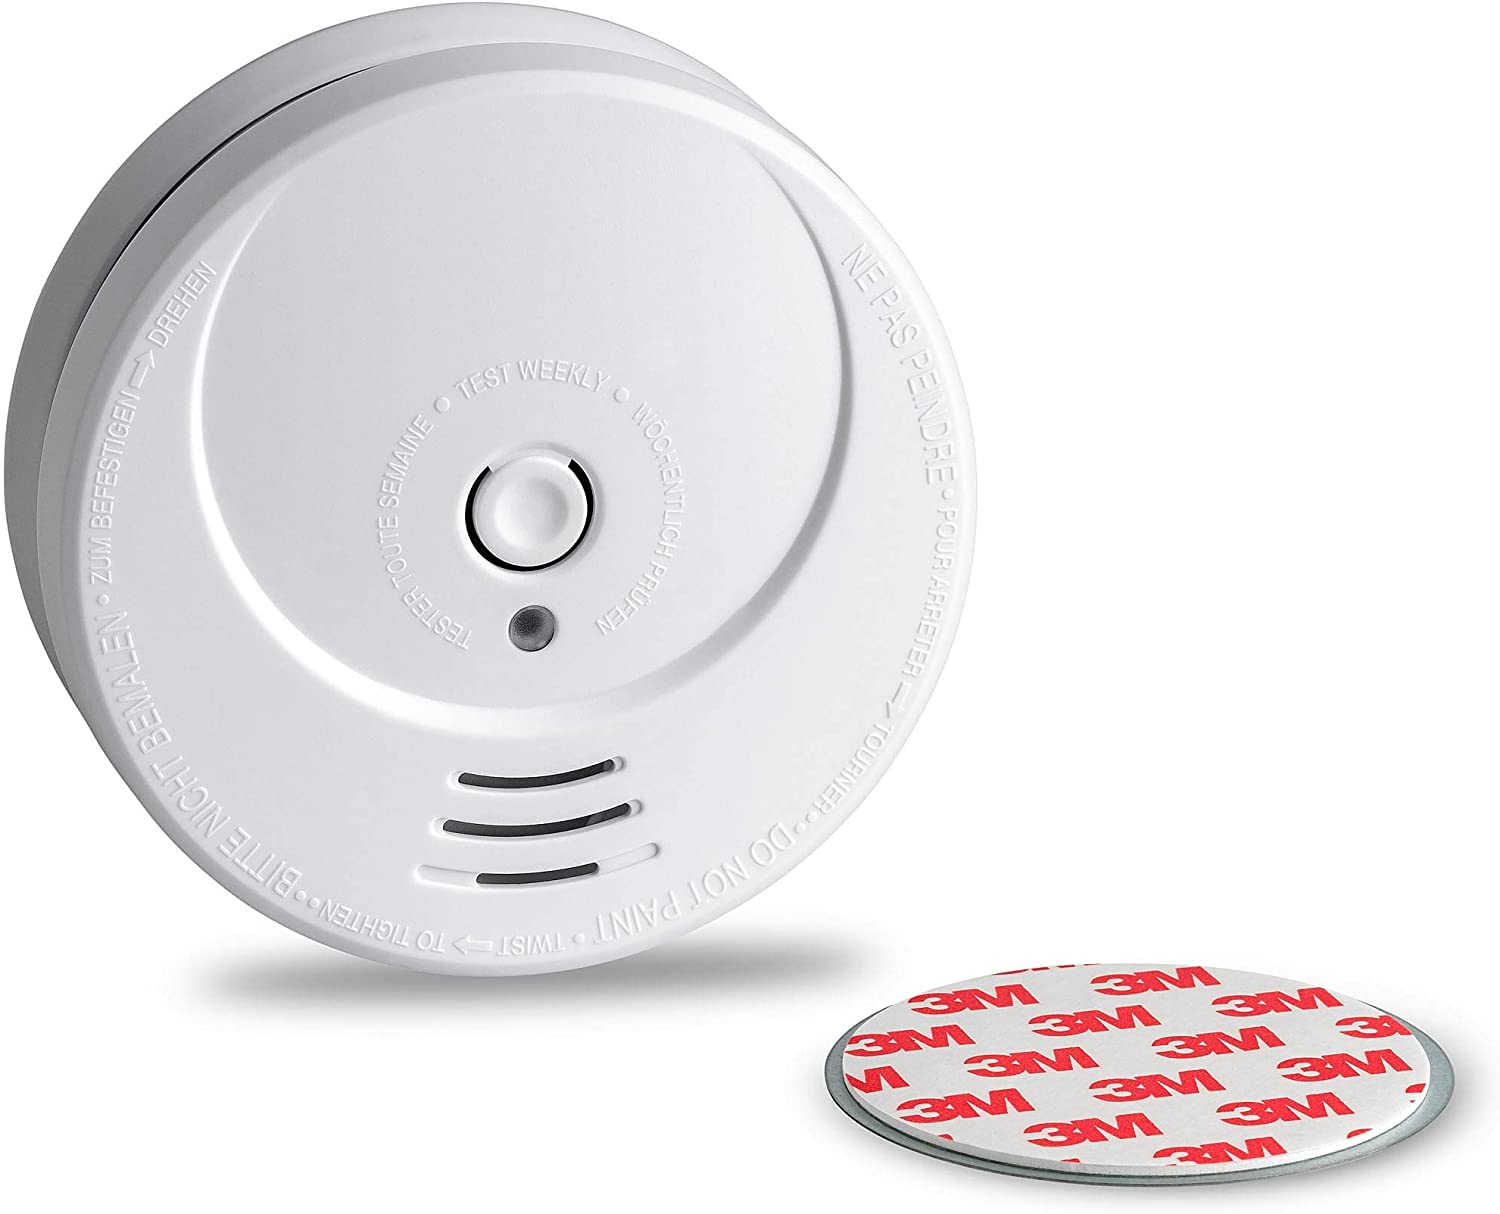 Los mejores detectores de humo para prevenir el fuego en casa